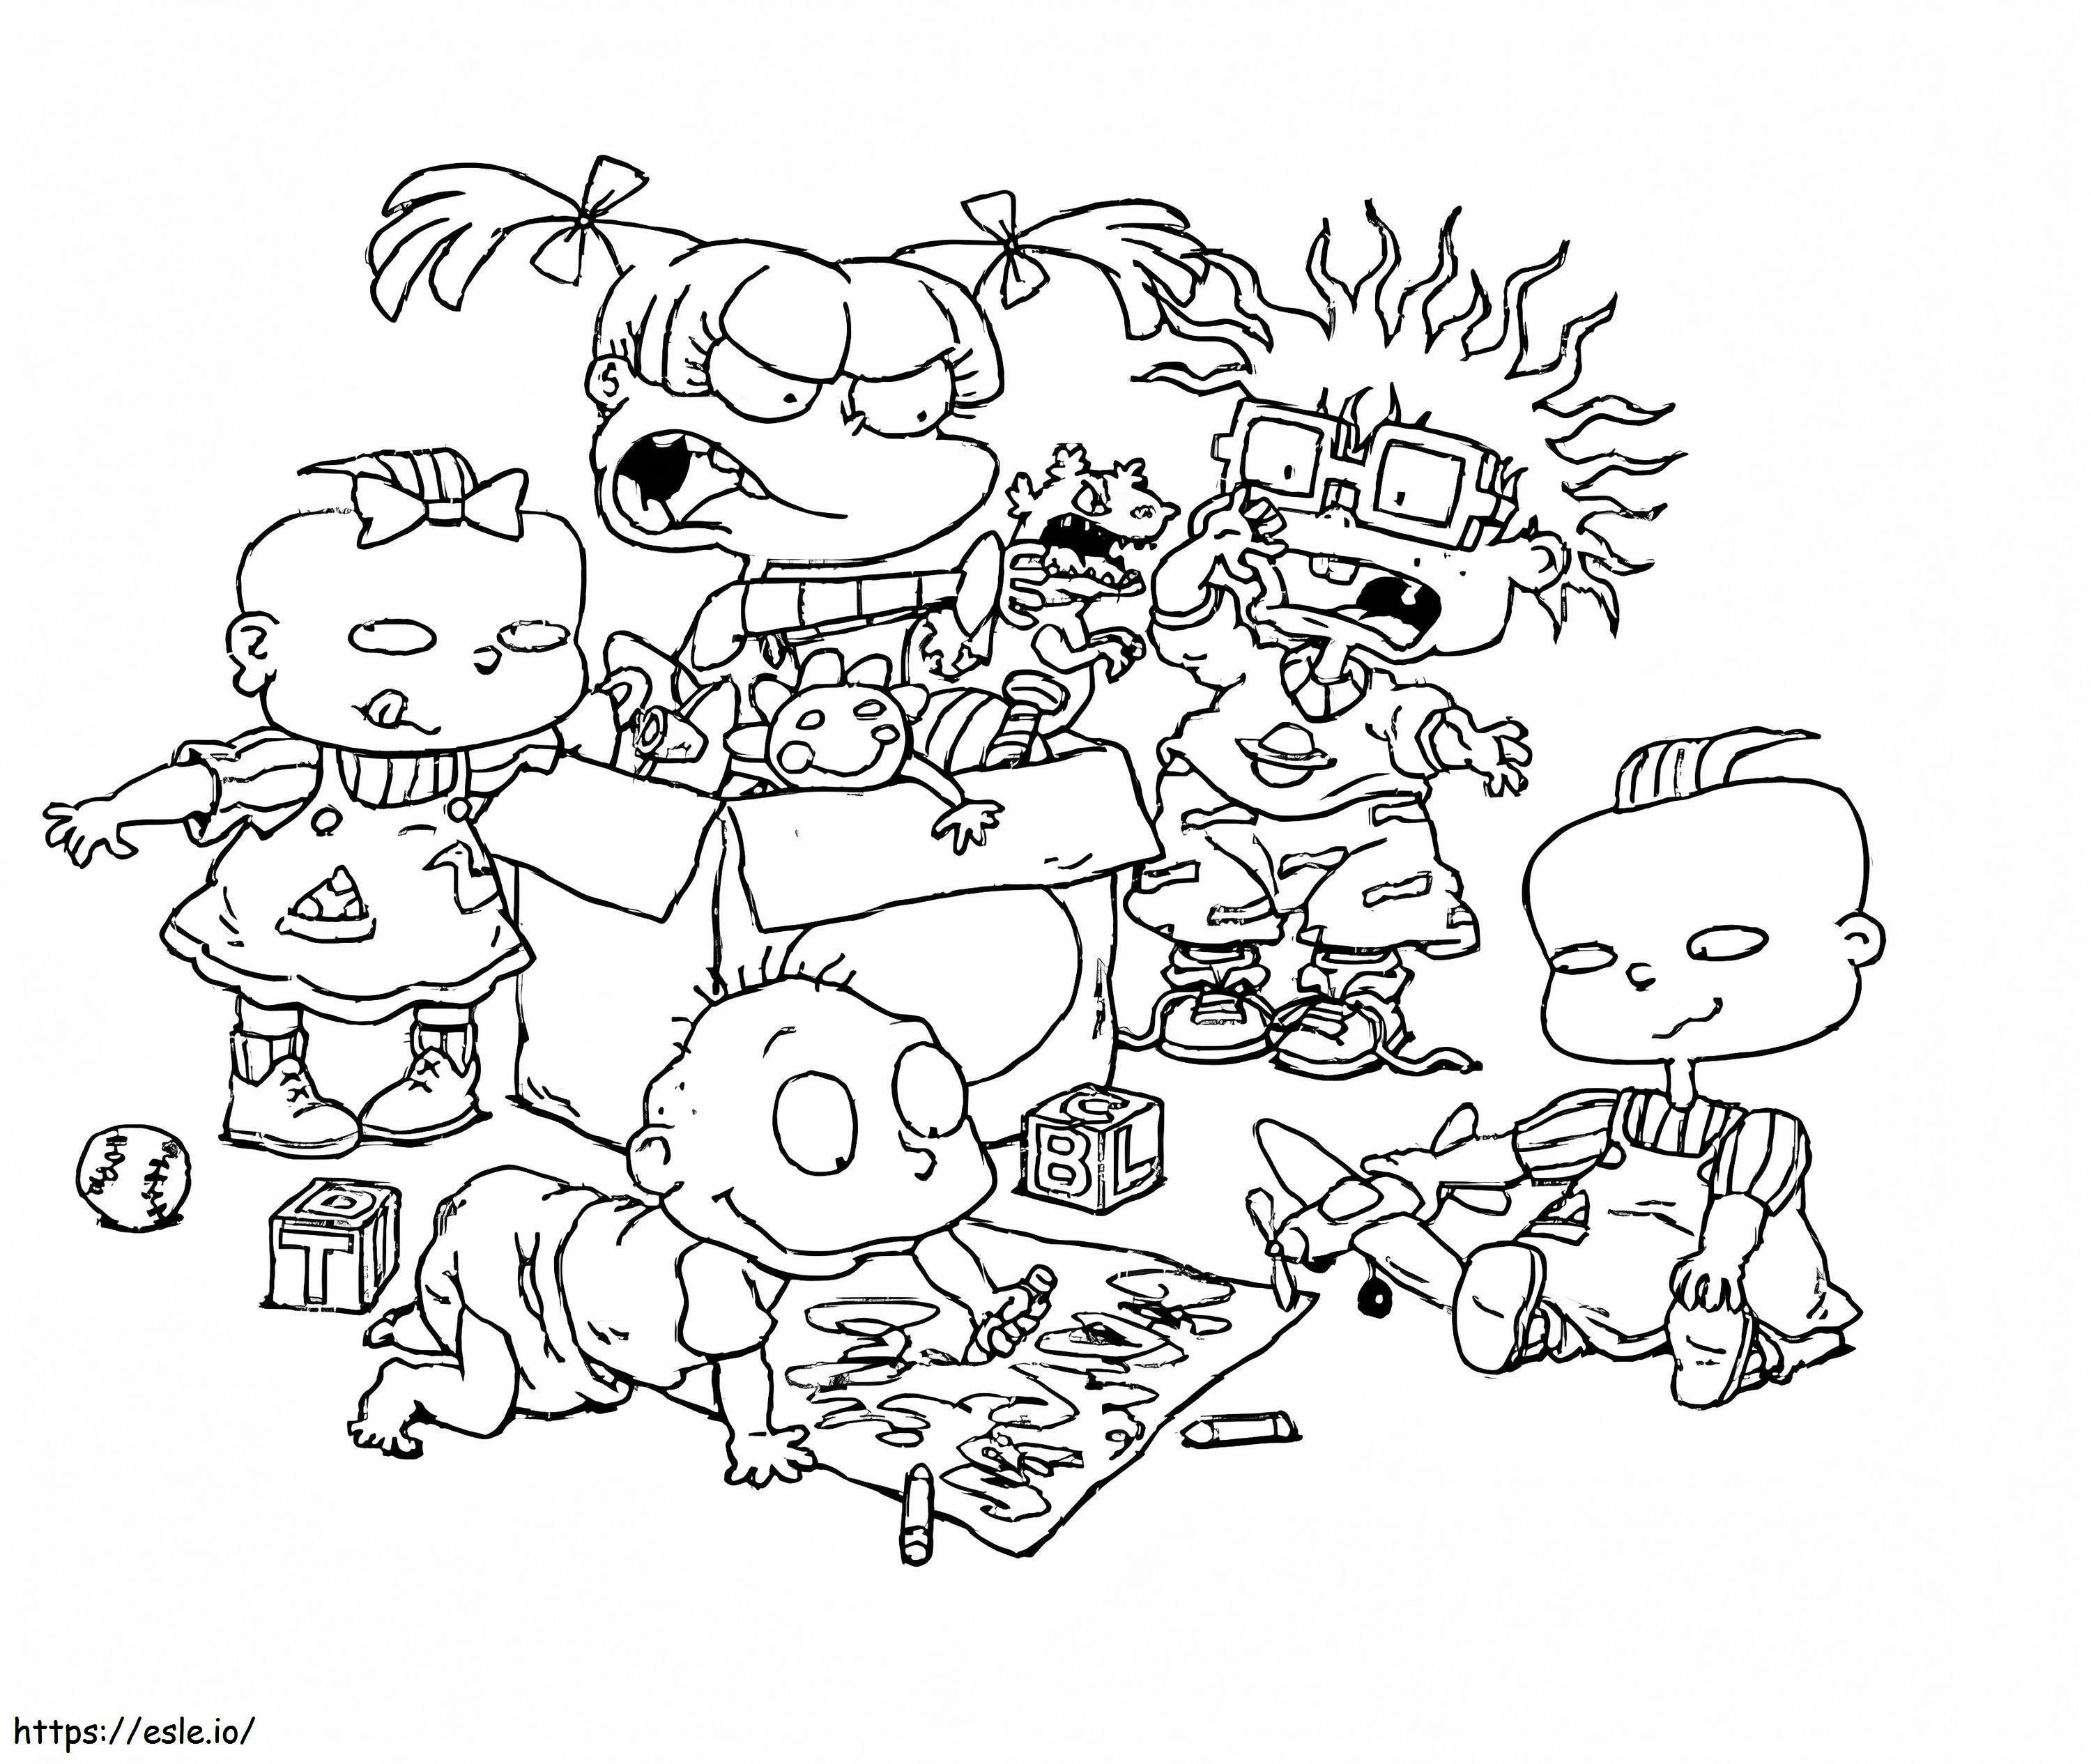 Personaje din Rugrats de colorat